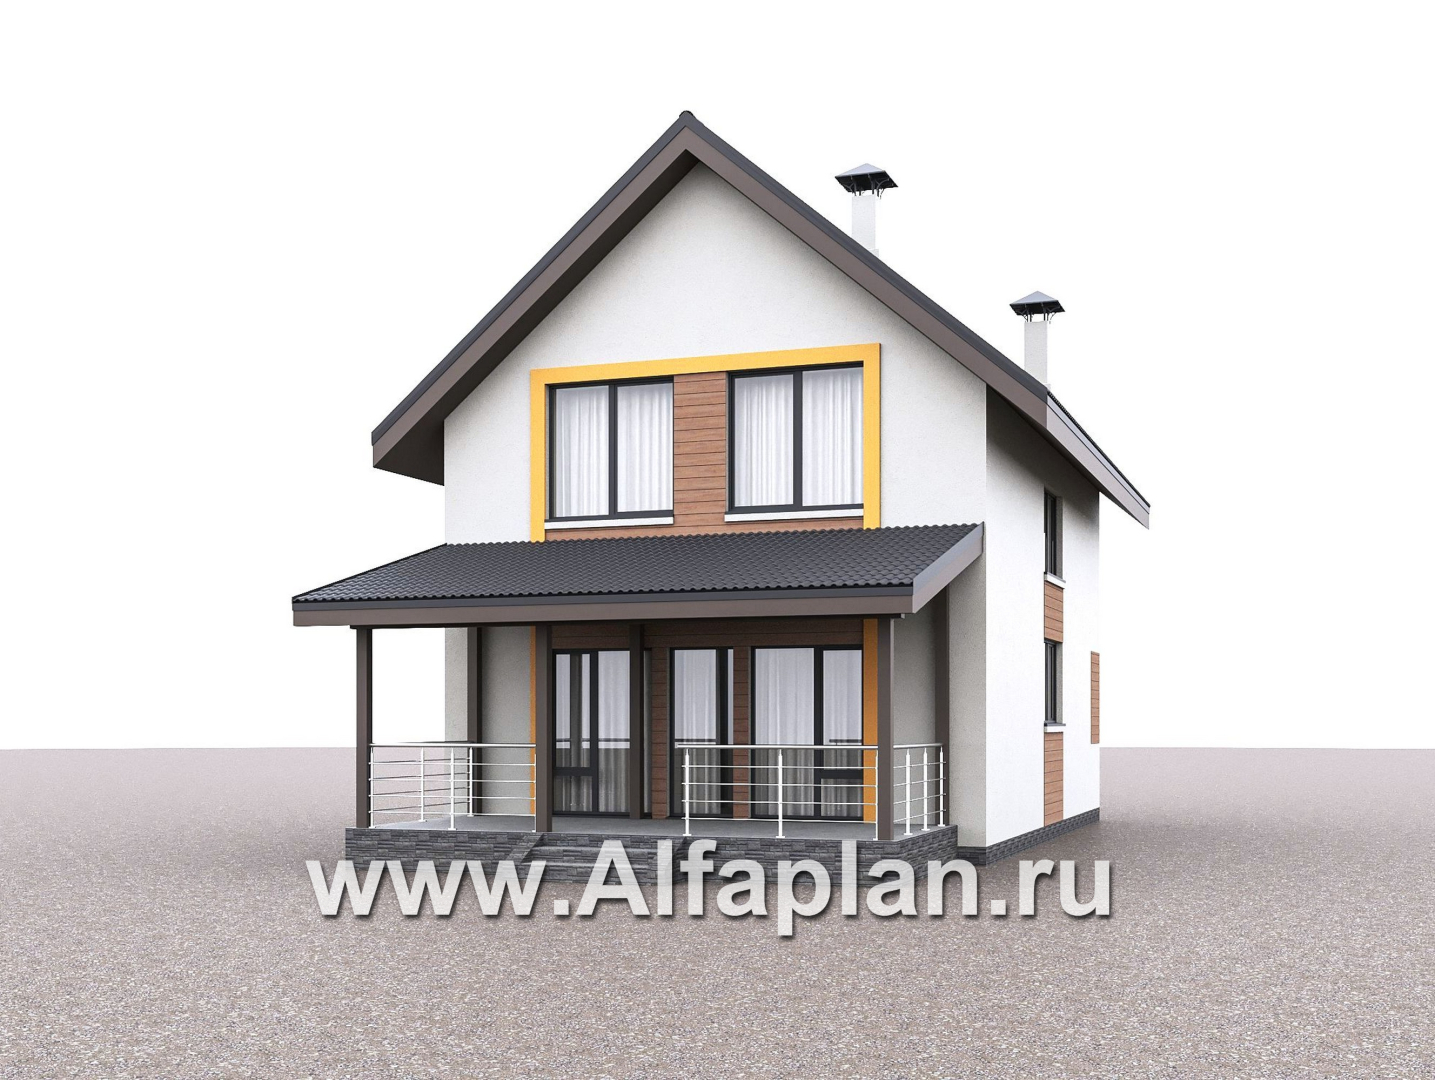 Проекты домов Альфаплан - "Викинг" - проект дома, 2 этажа, с сауной и с террасой, в скандинавском стиле - дополнительное изображение №2